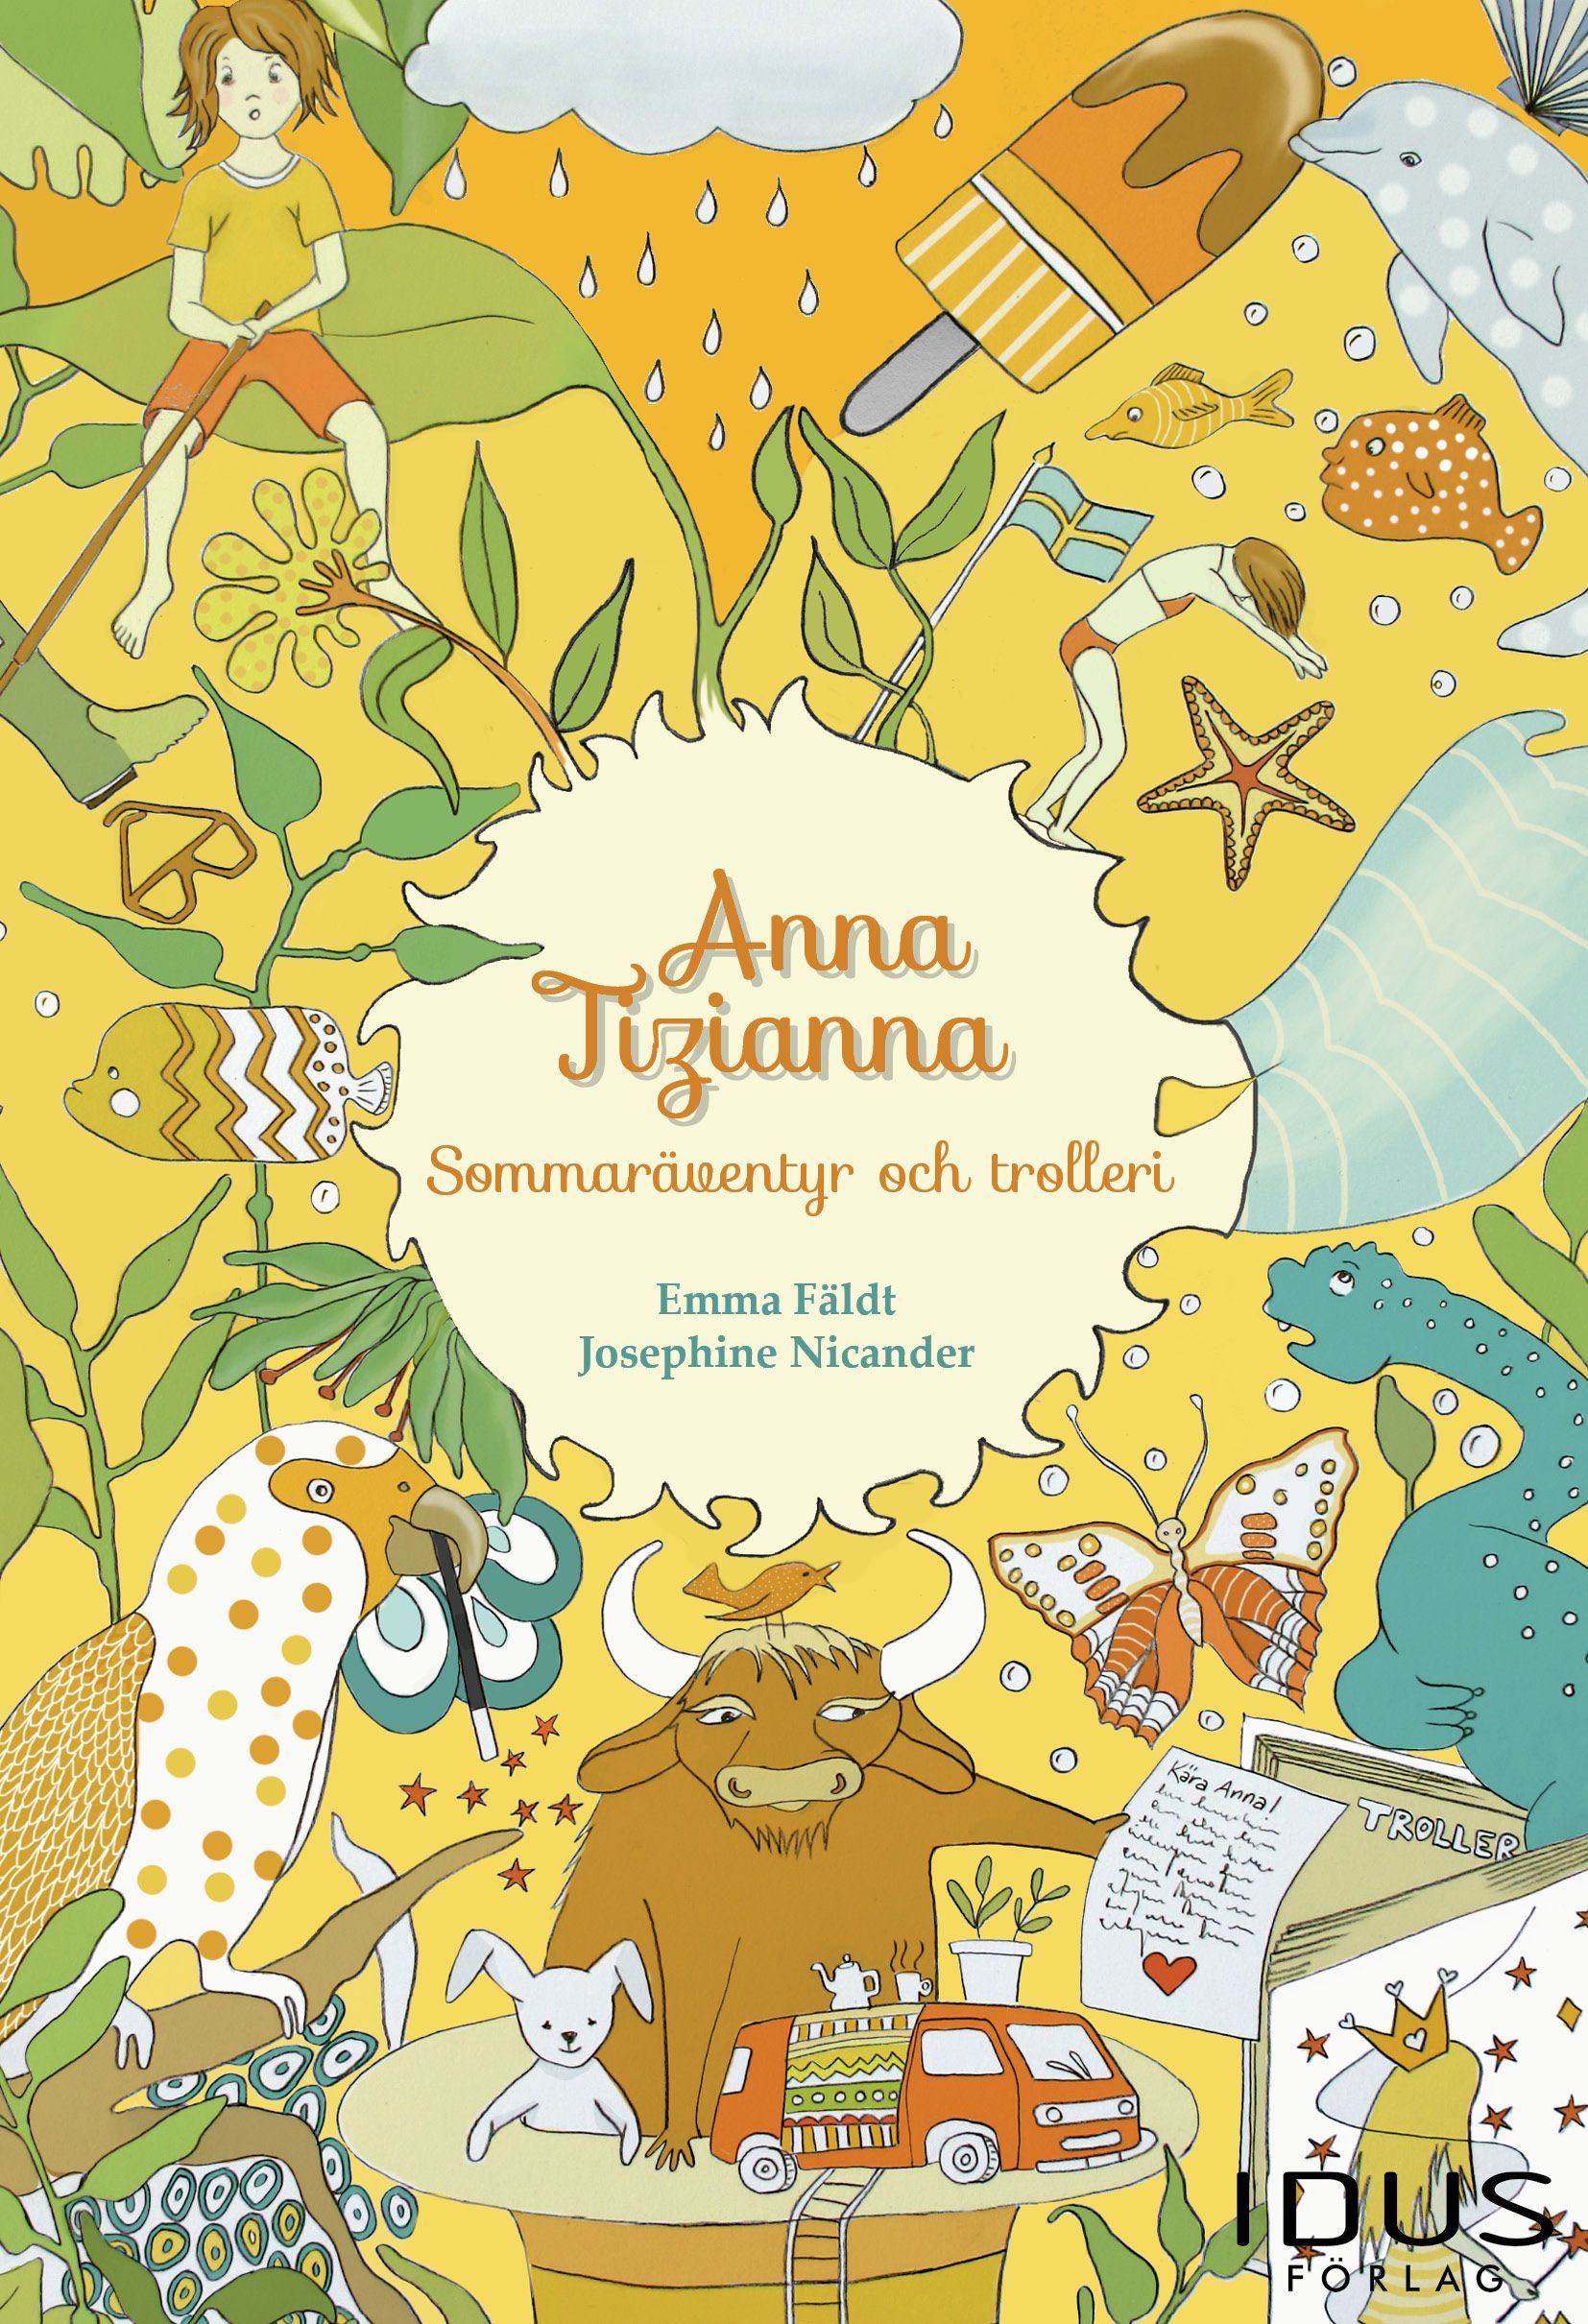 Anna Tizianna – Sommaräventyr och trolleri, e-bok av Emma Fäldt